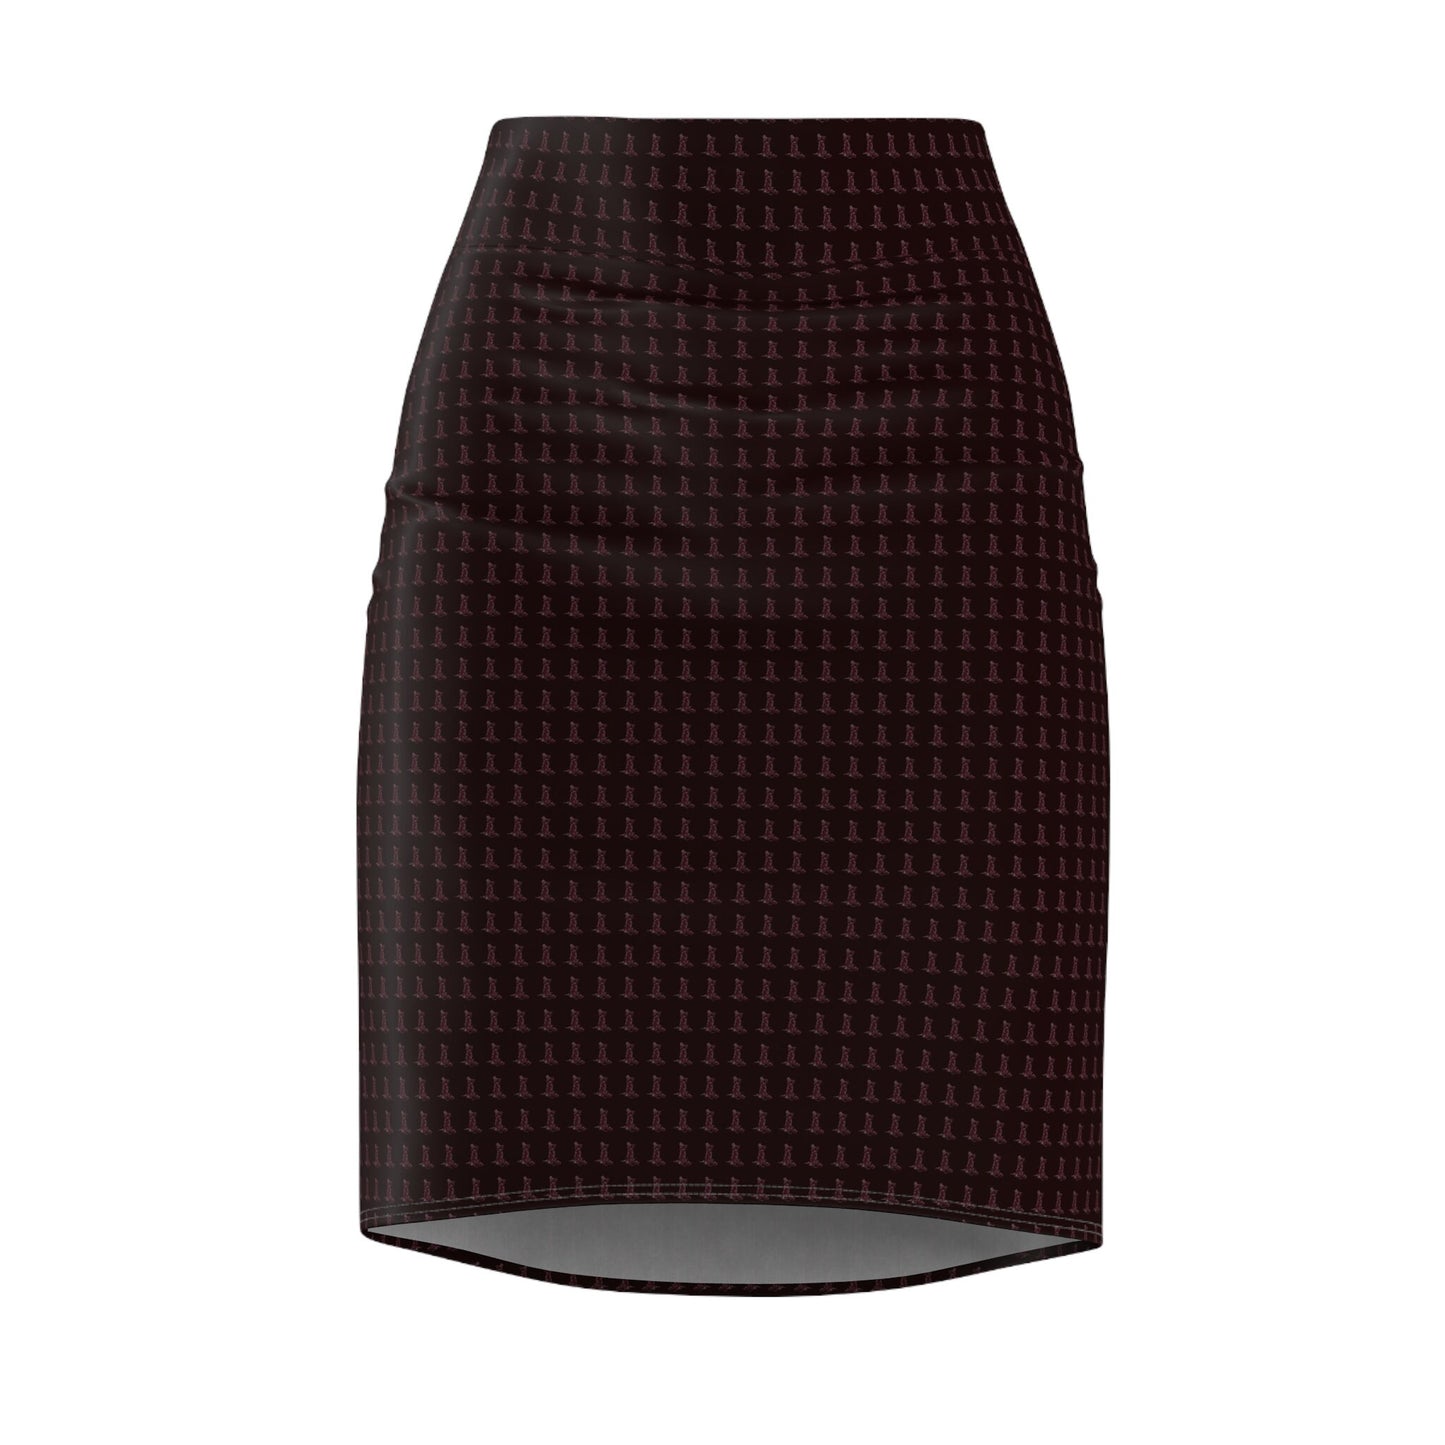 Women's Pencil Skirt (AOP) - Jip avèk Konsepsyon Nèg Mawon